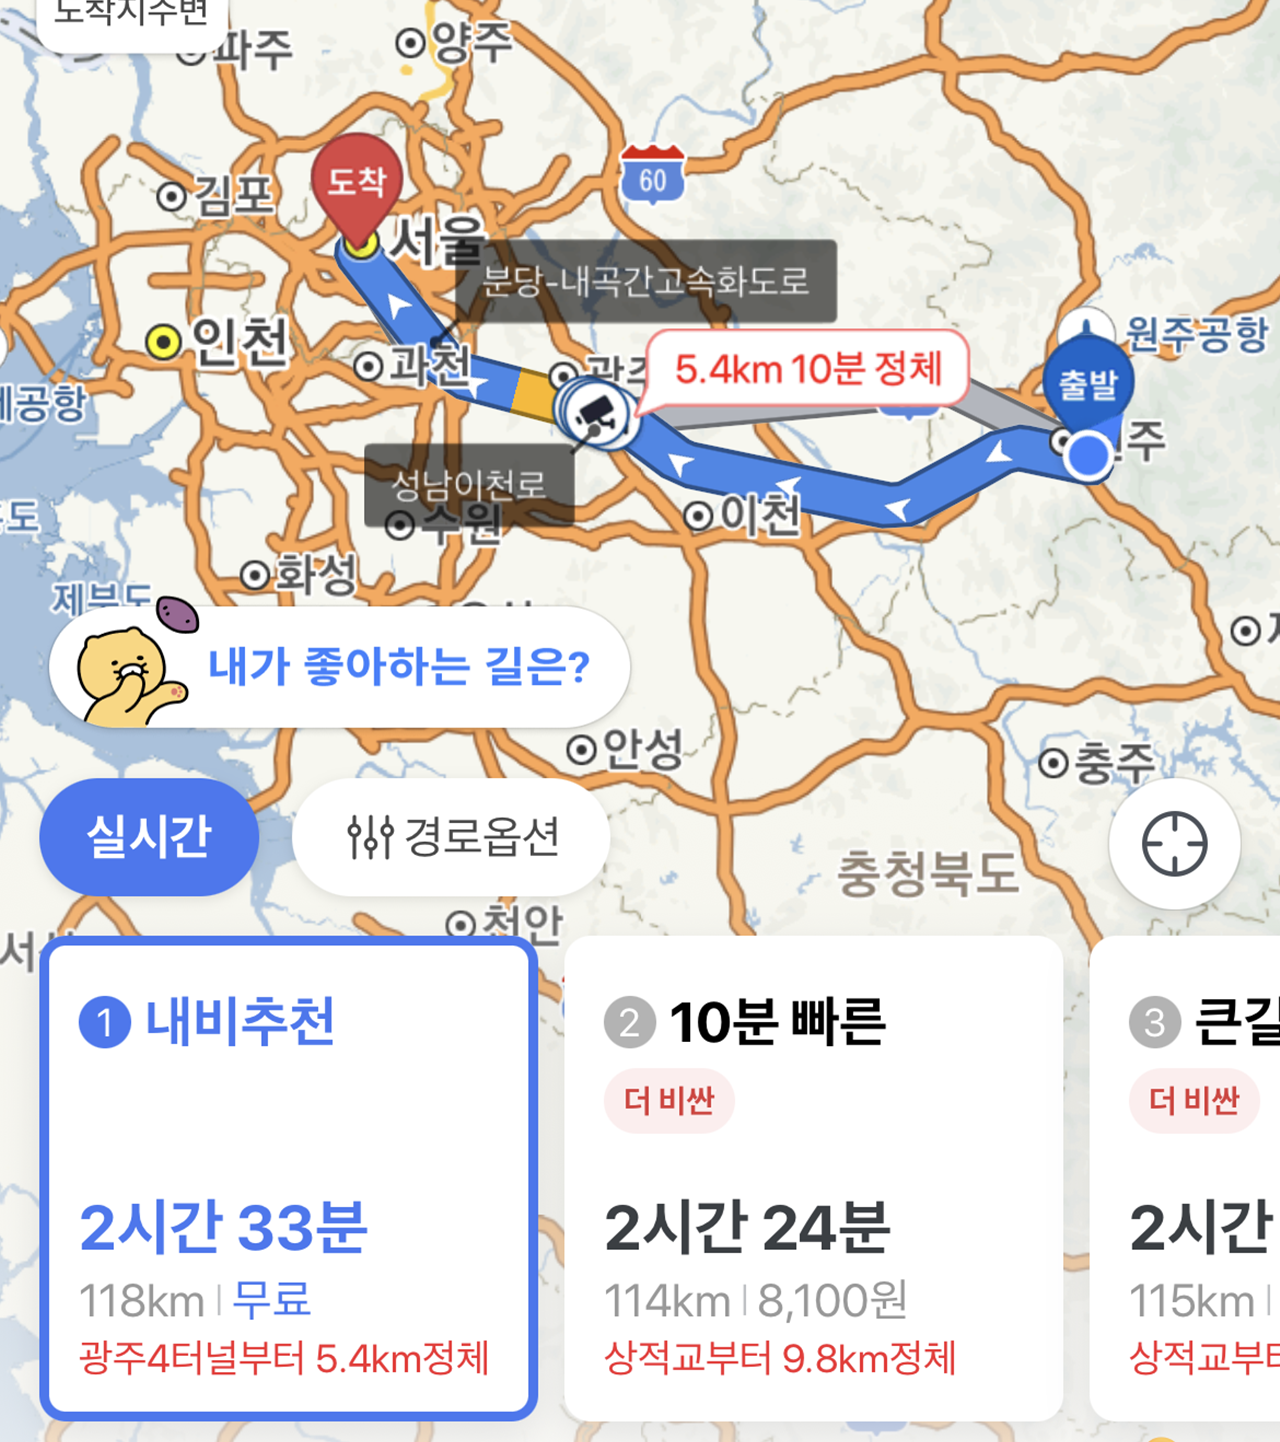 ▲강원도 원주 사무실에서 서울 중심까지는 약 120km 내외가 소요된다